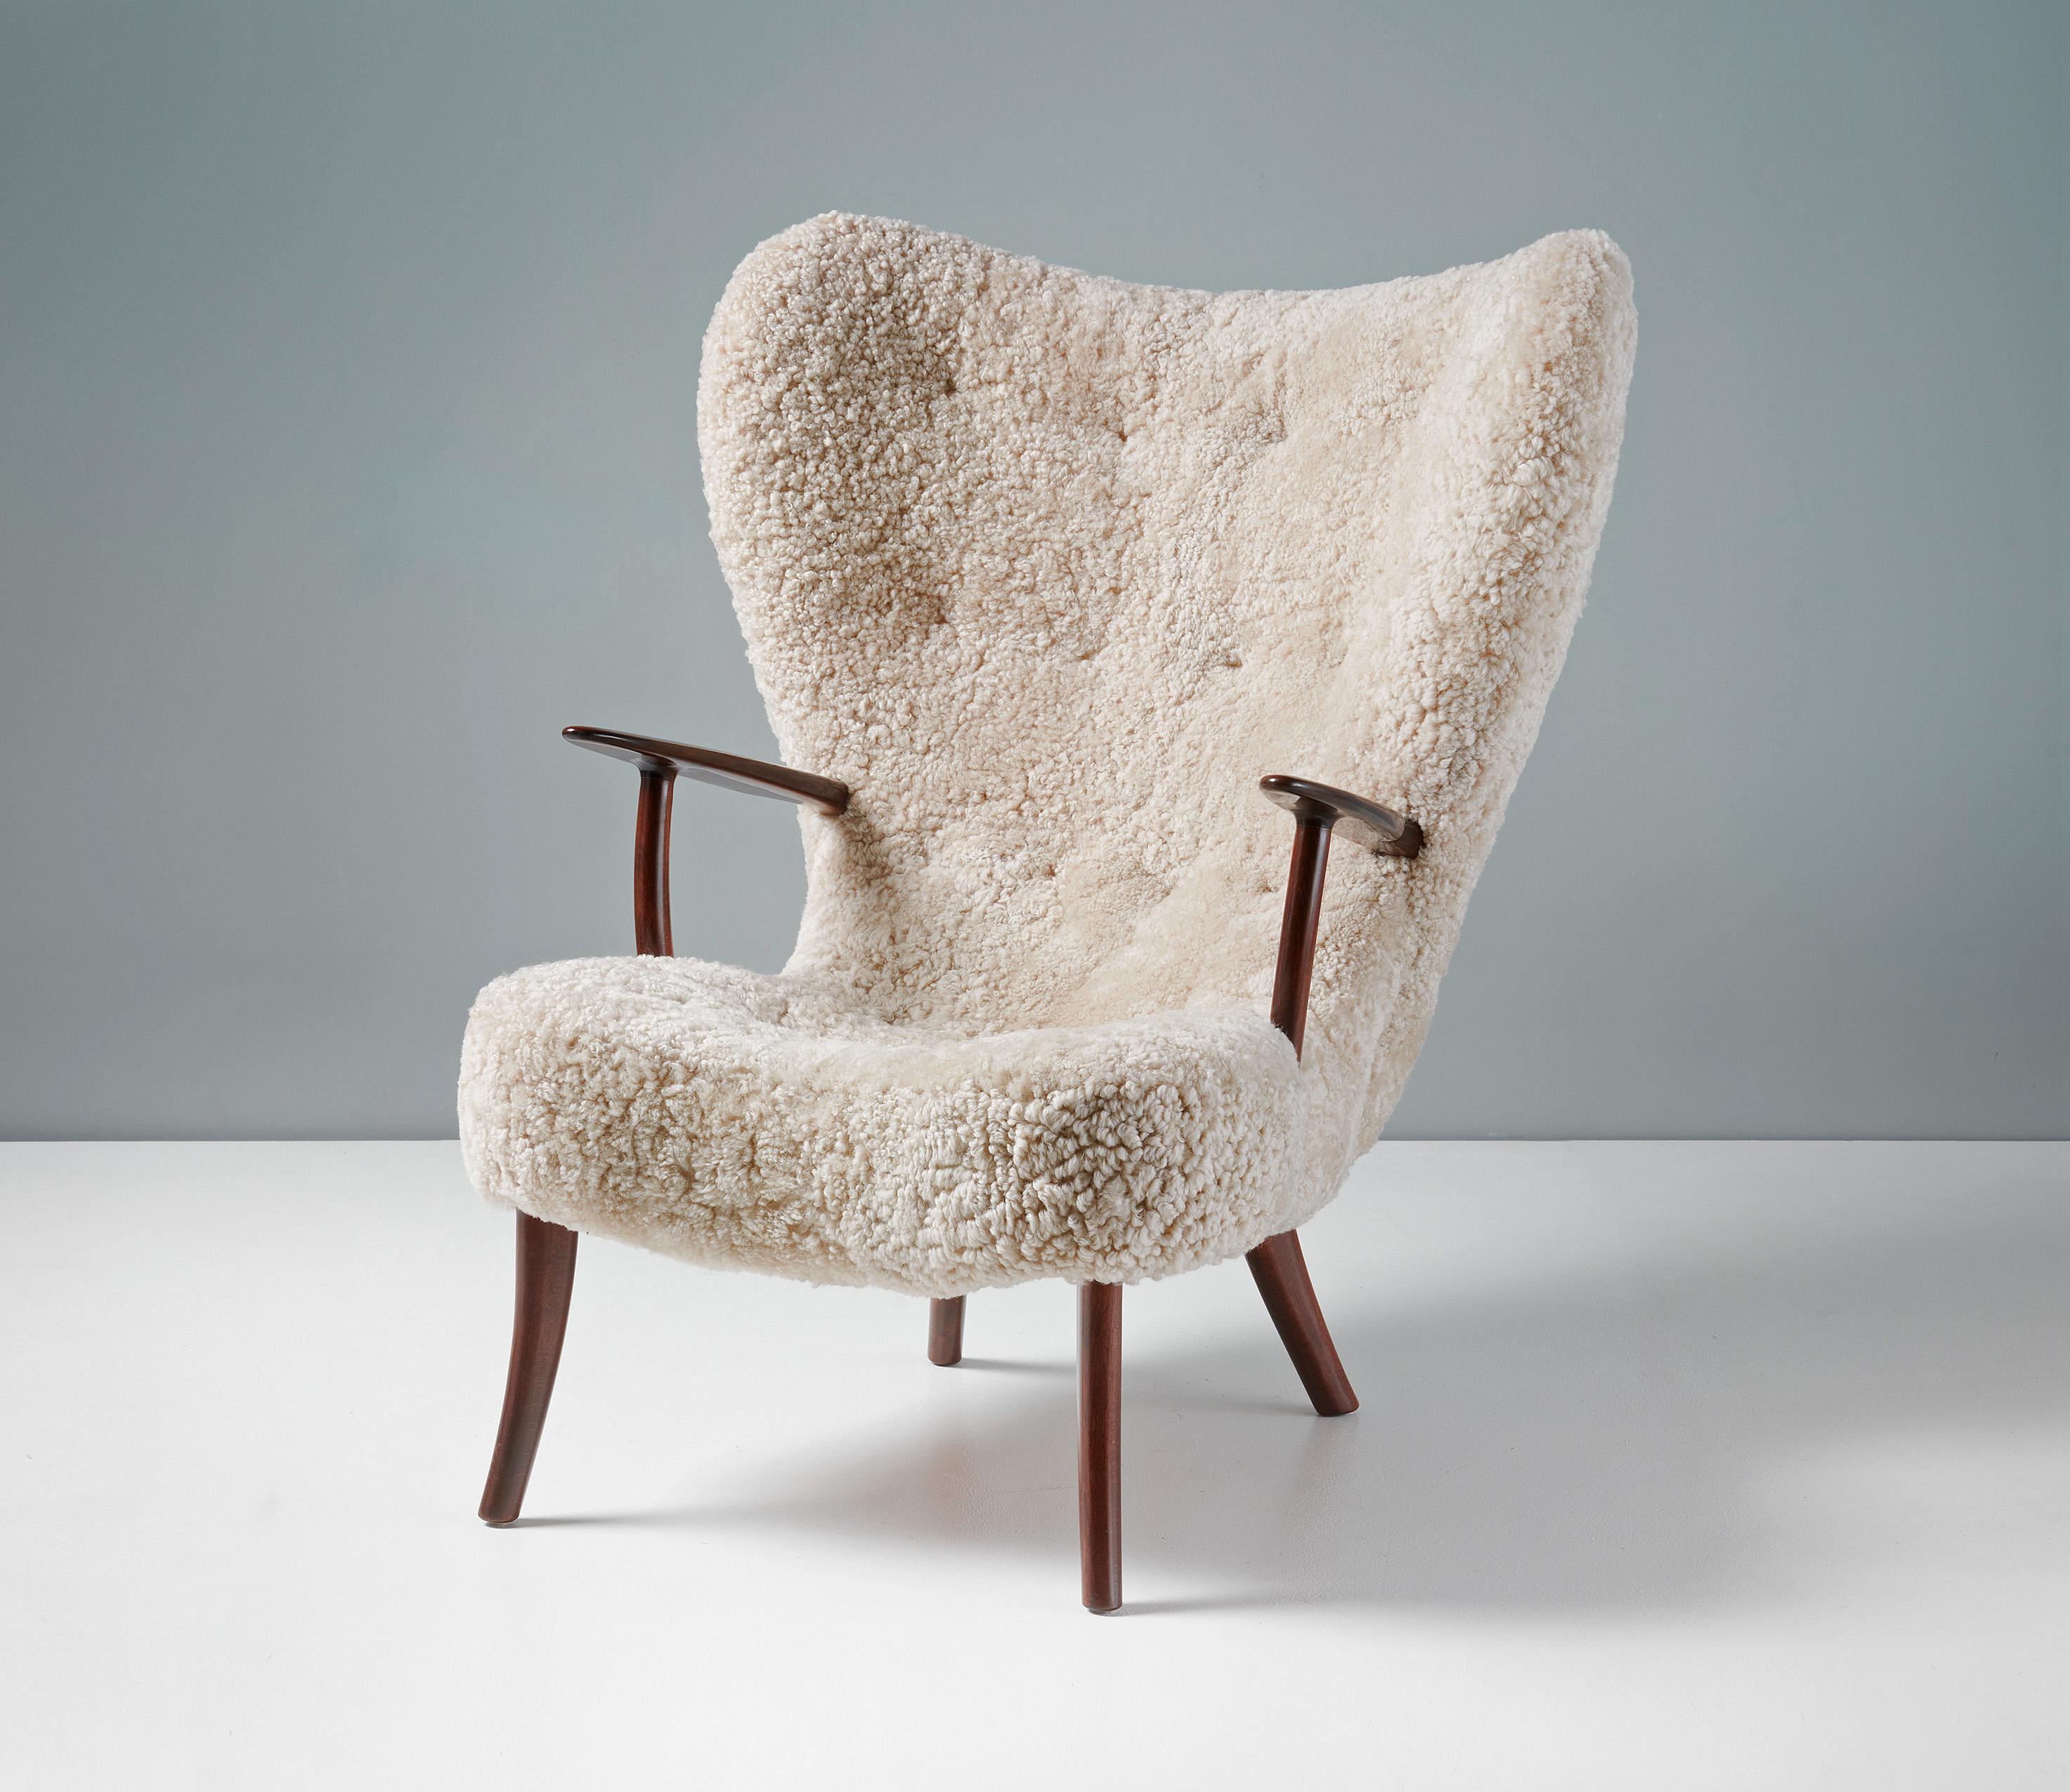 Arnold Madsen & Herny Schubell - La chaise et le tabouret Pragh

La chaise Pragh est une pièce emblématique du design danois de la période dorée du milieu des années 1950. Le Pragh est le deuxième chef-d'œuvre de Madsen & Schubell's, peu après le